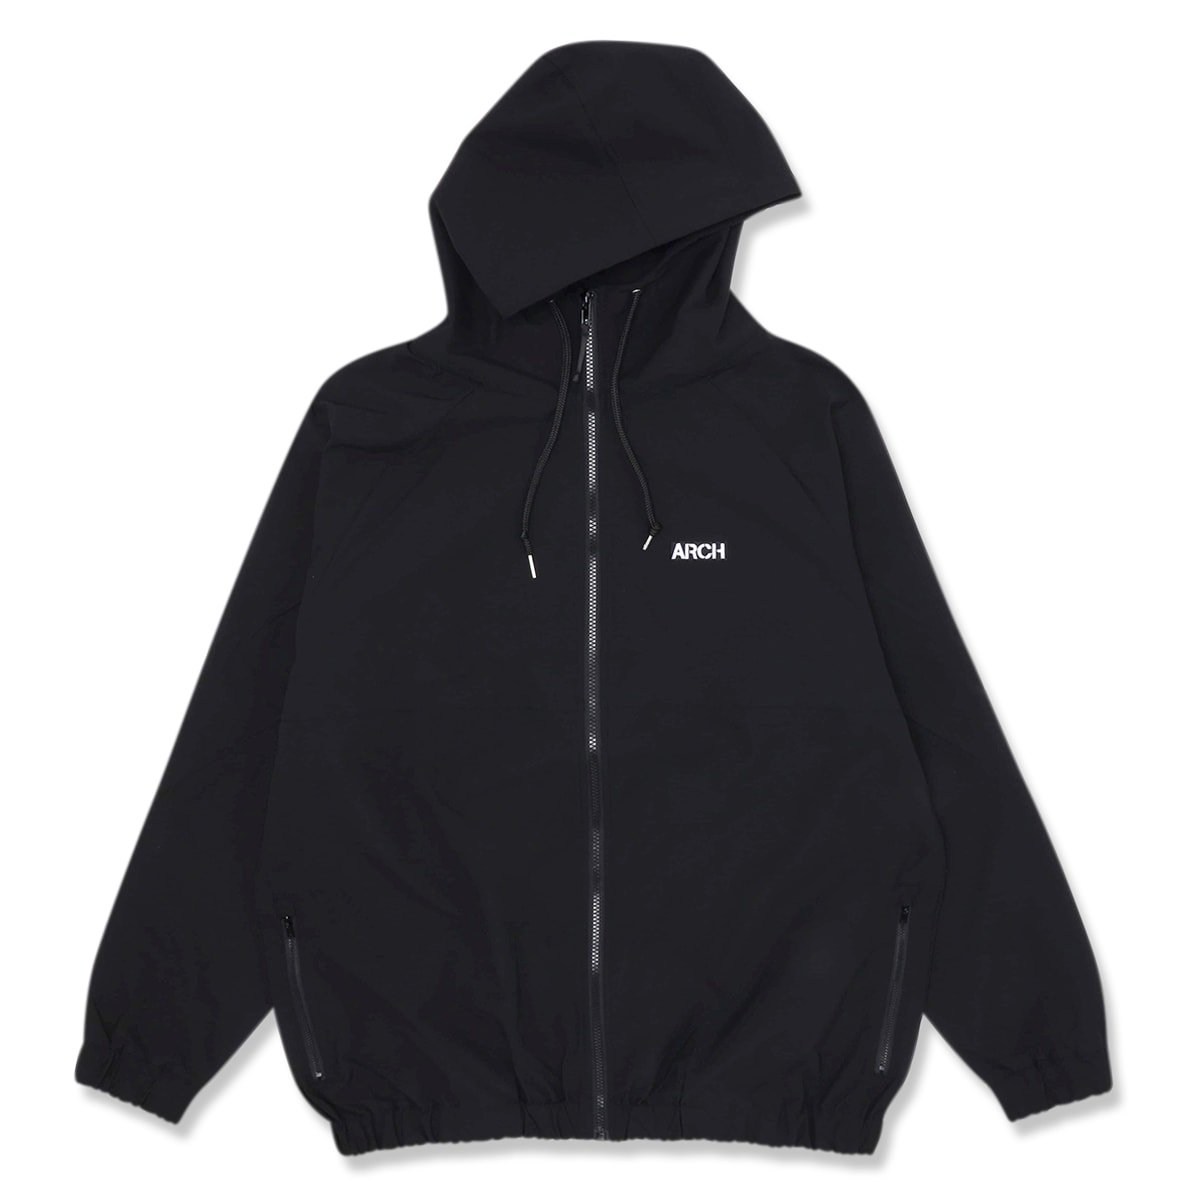 light zip up jacket【black】